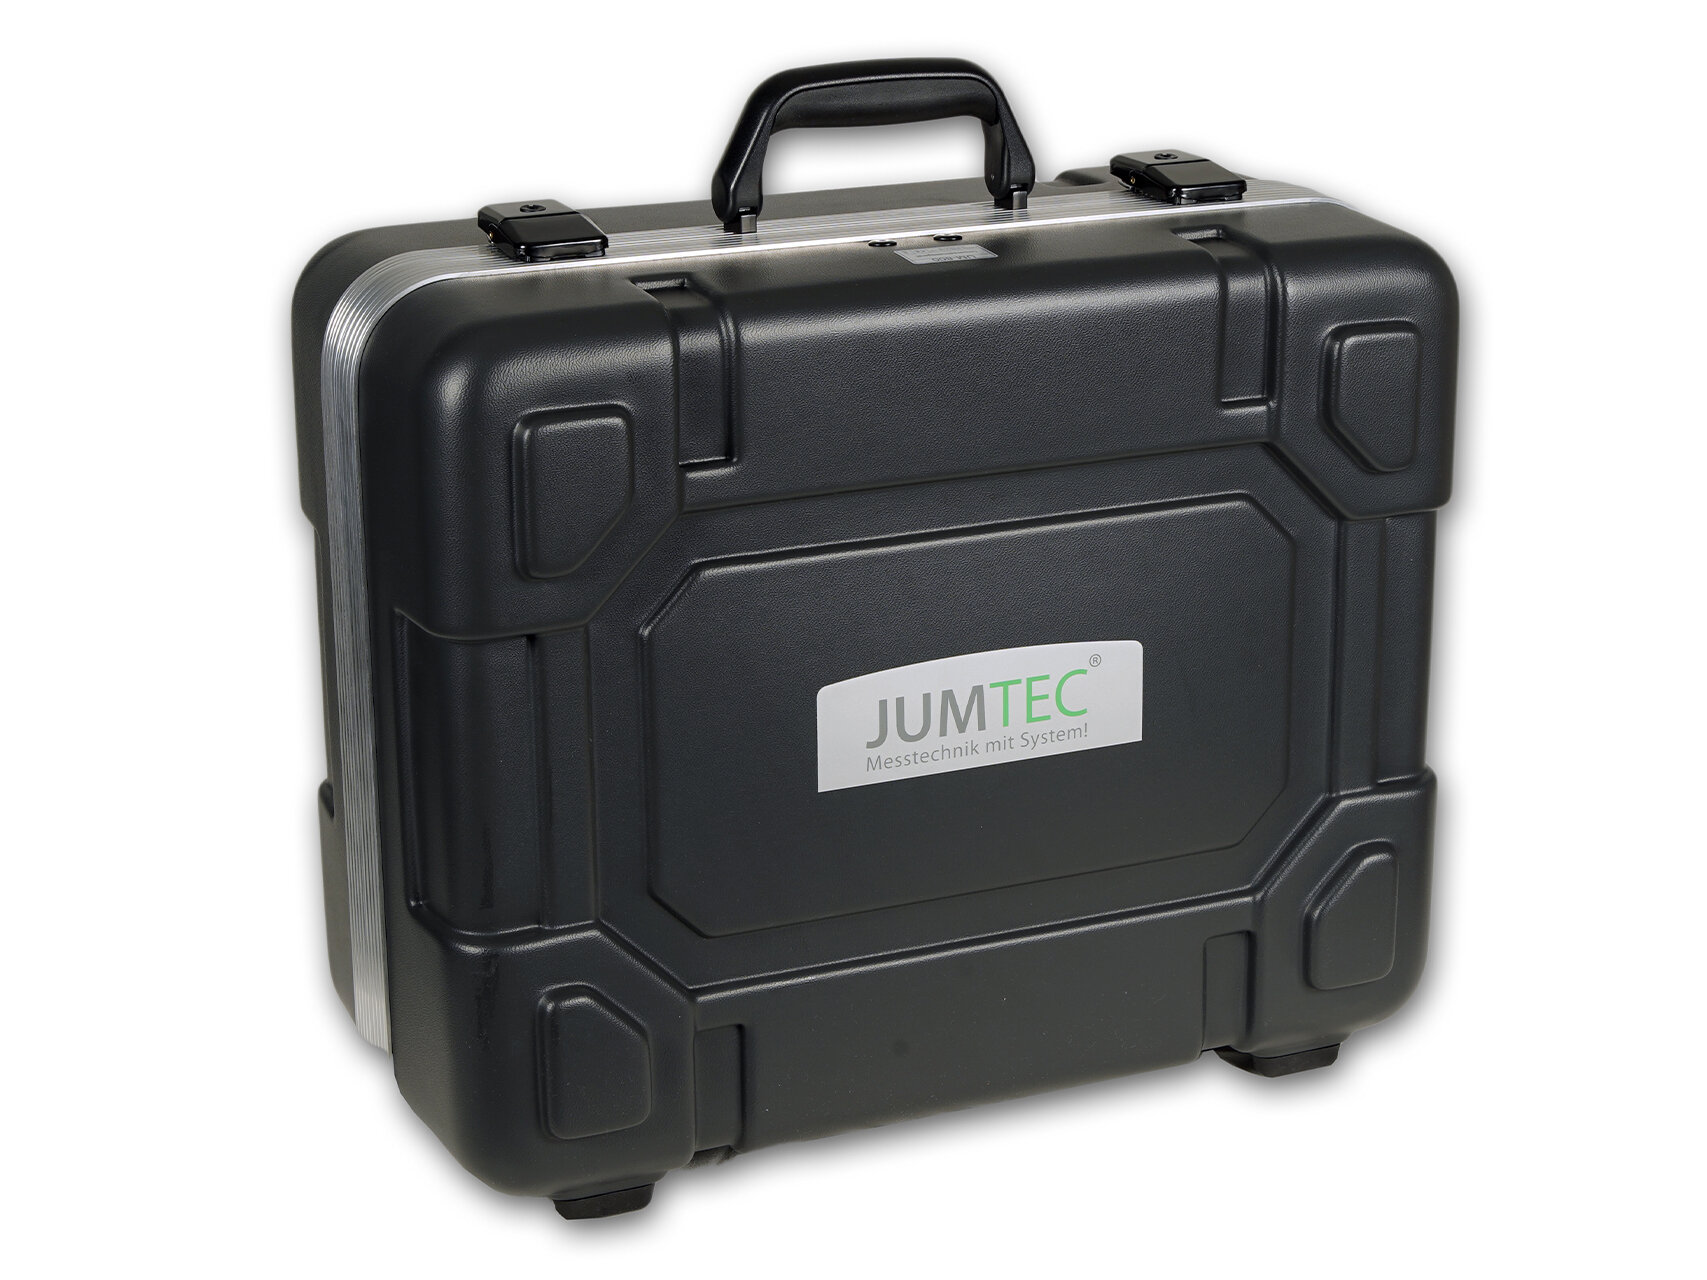 Jumtec - Koffer für Messtechnik. Der eigene Koffer als Werbeträger